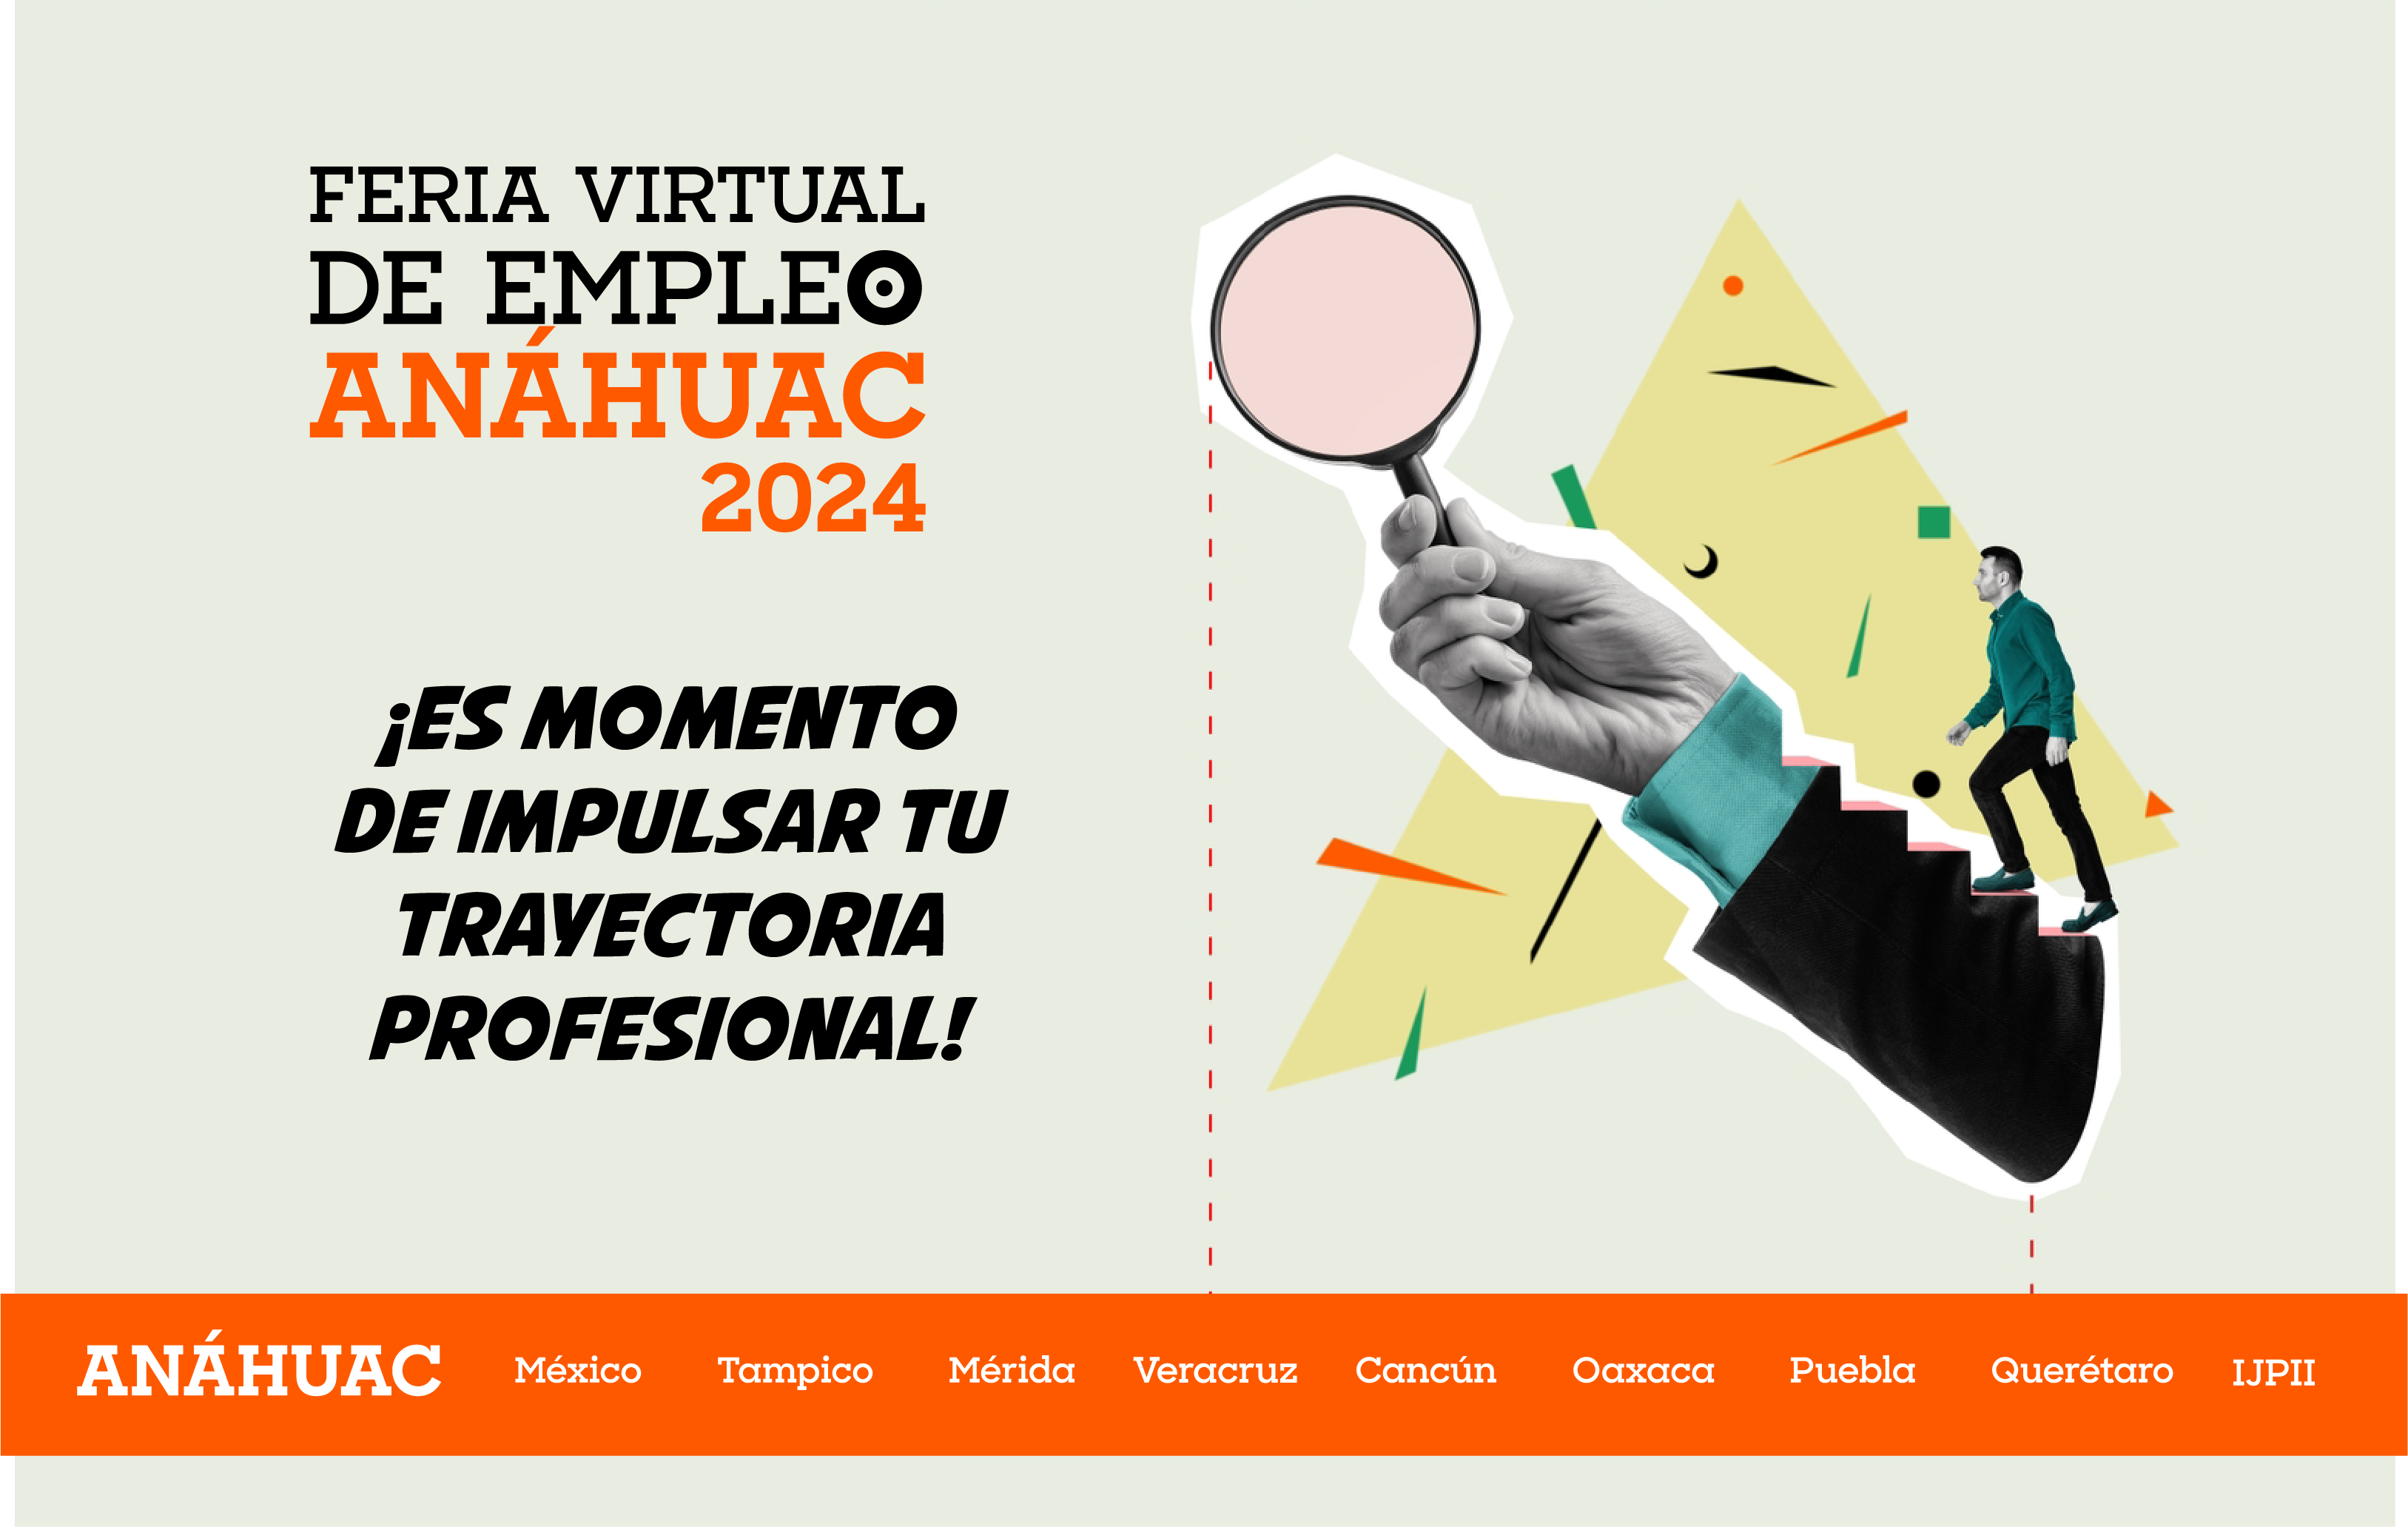 Feria Virtual de Empleo Anáhuac